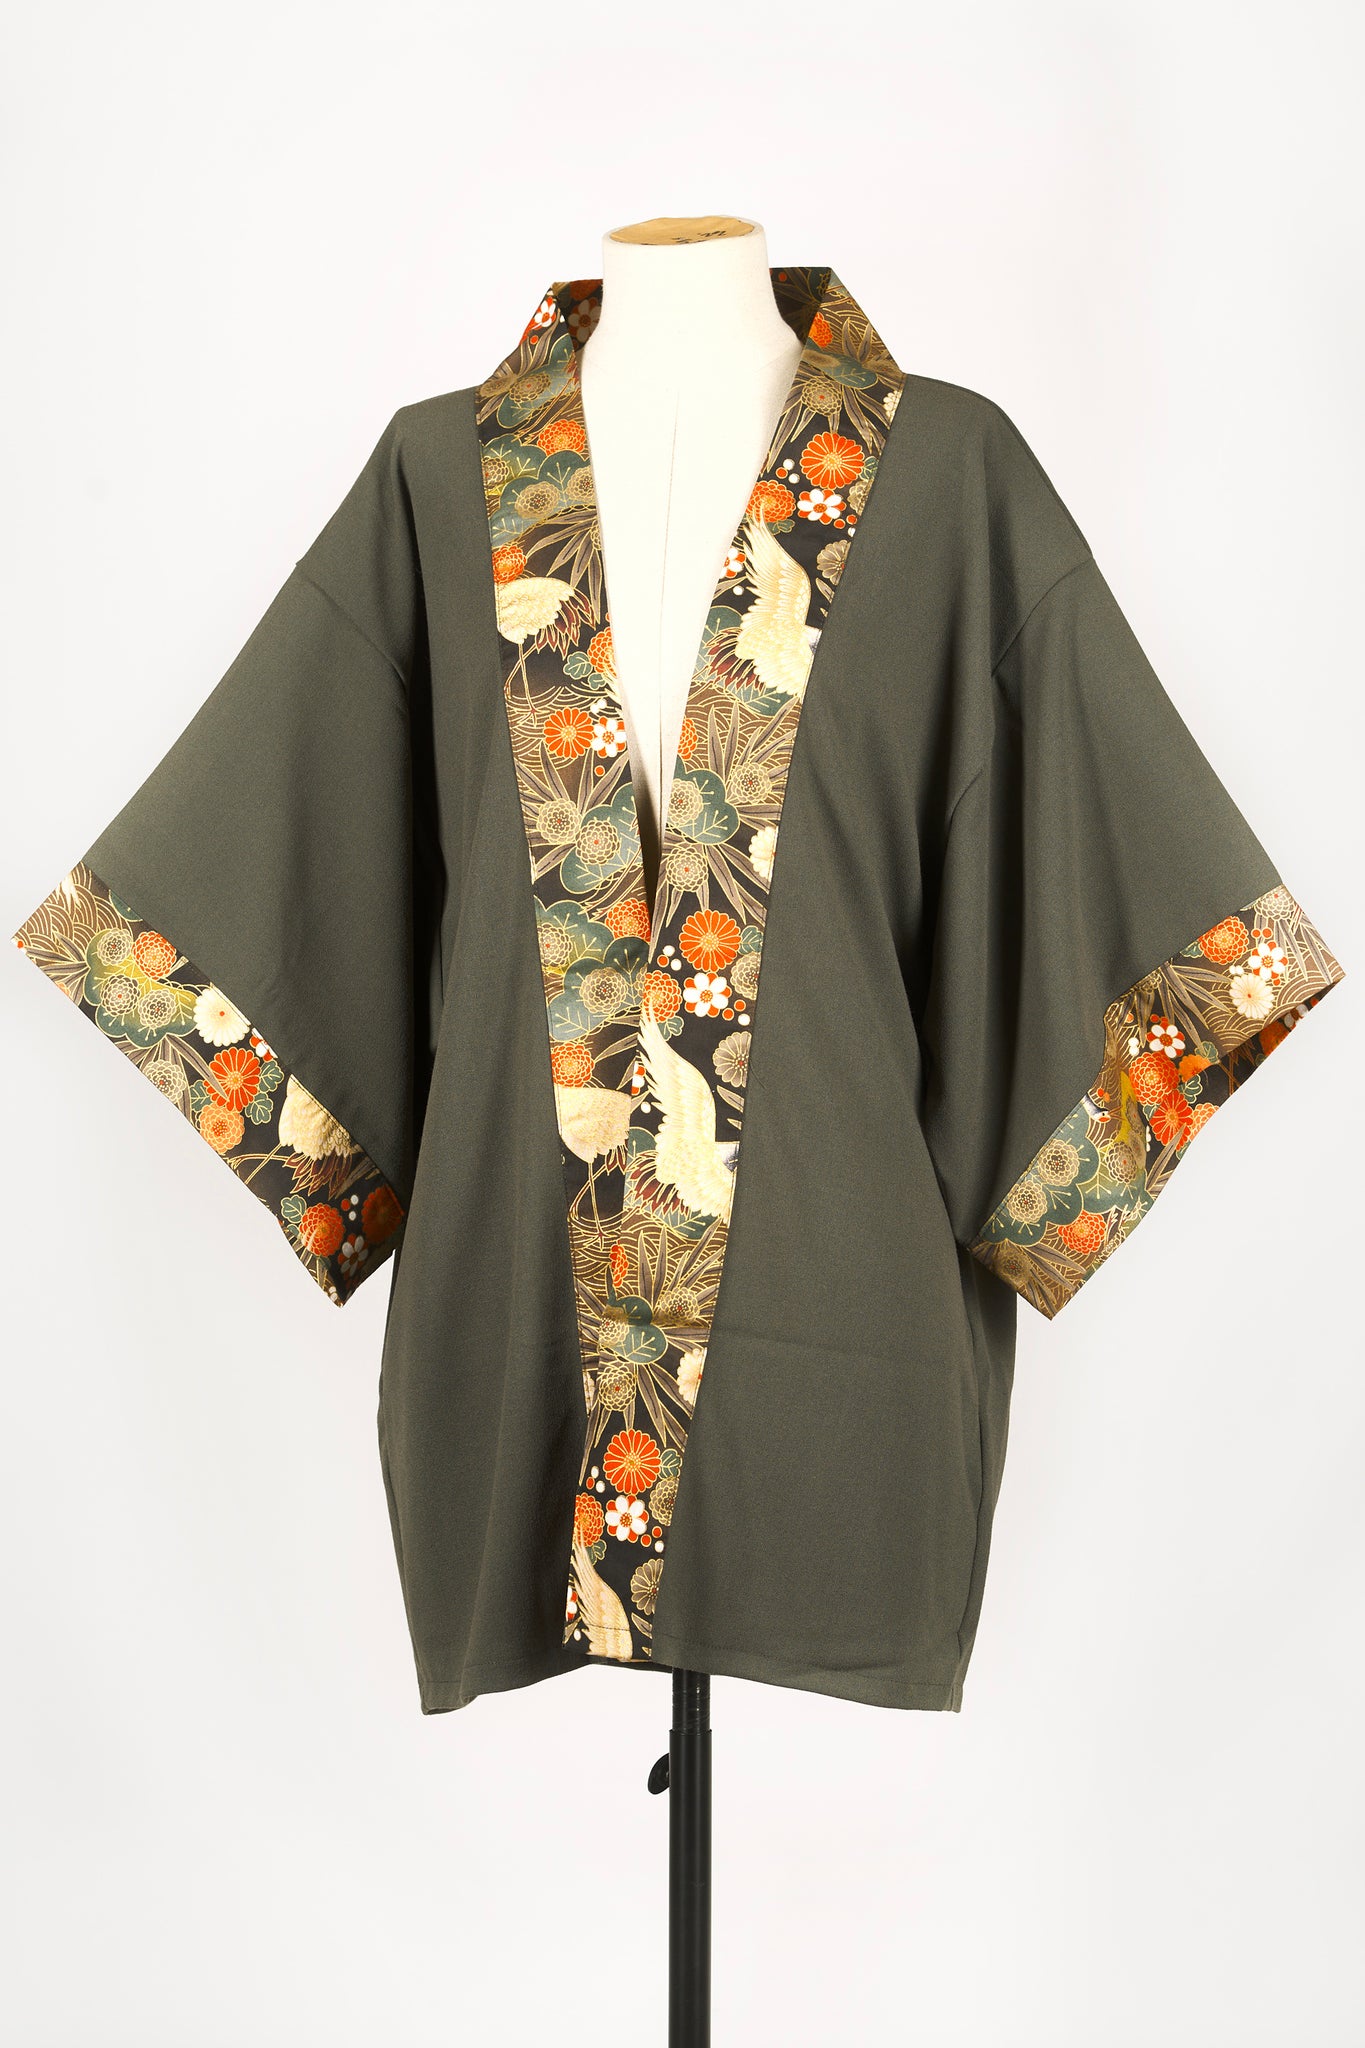 Kimono HIME Grues dans les pins kaki - Fleurs D'Ascenseurs